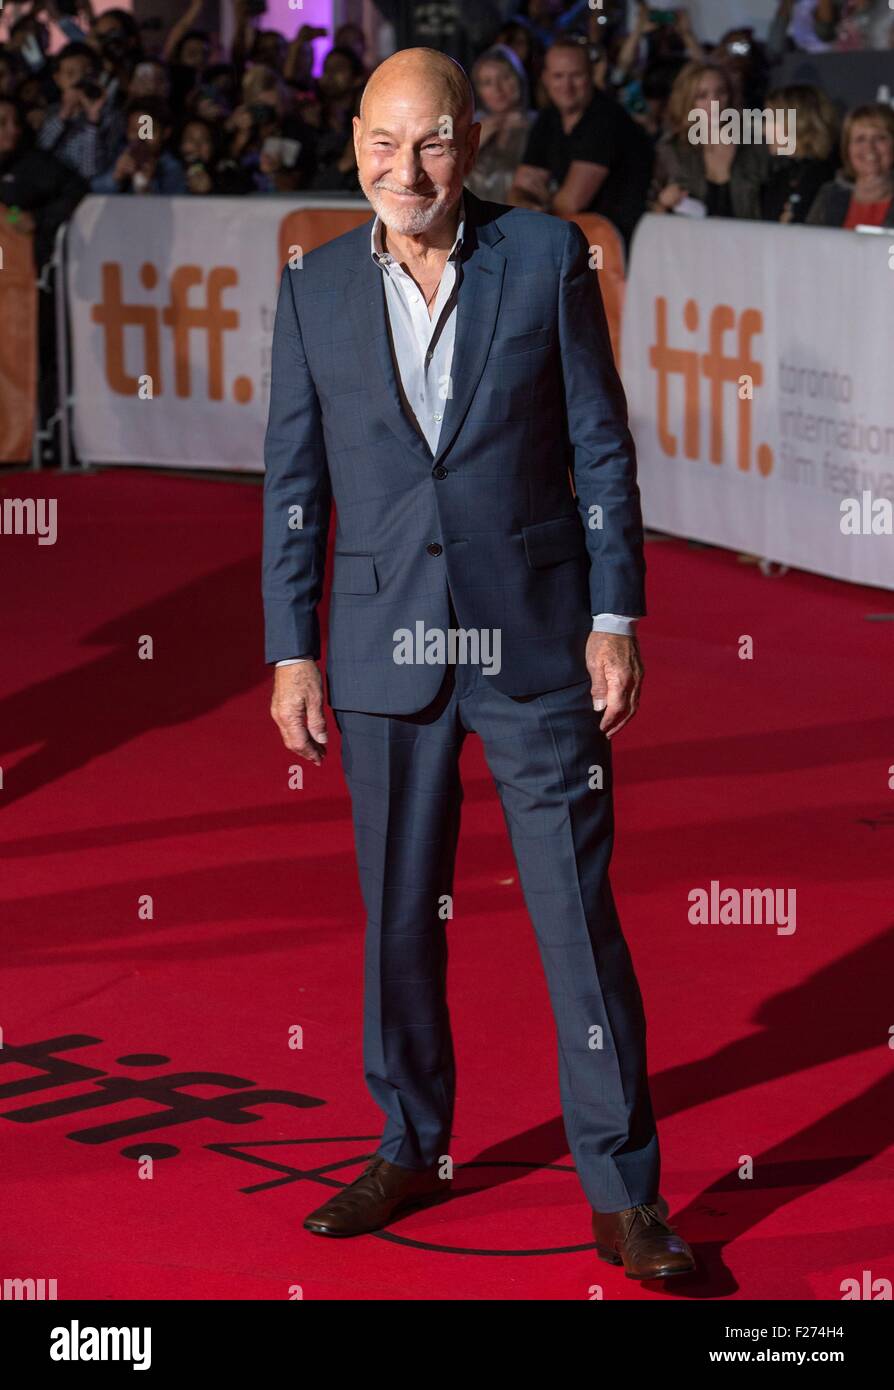 El actor Patrick Stewart asiste al estreno mundial de El Marciano en el Festival Internacional de Cine de Toronto en el Roy Thomson Hall, del 11 de septiembre de 2015 en Toronto, Canadá. Foto de stock